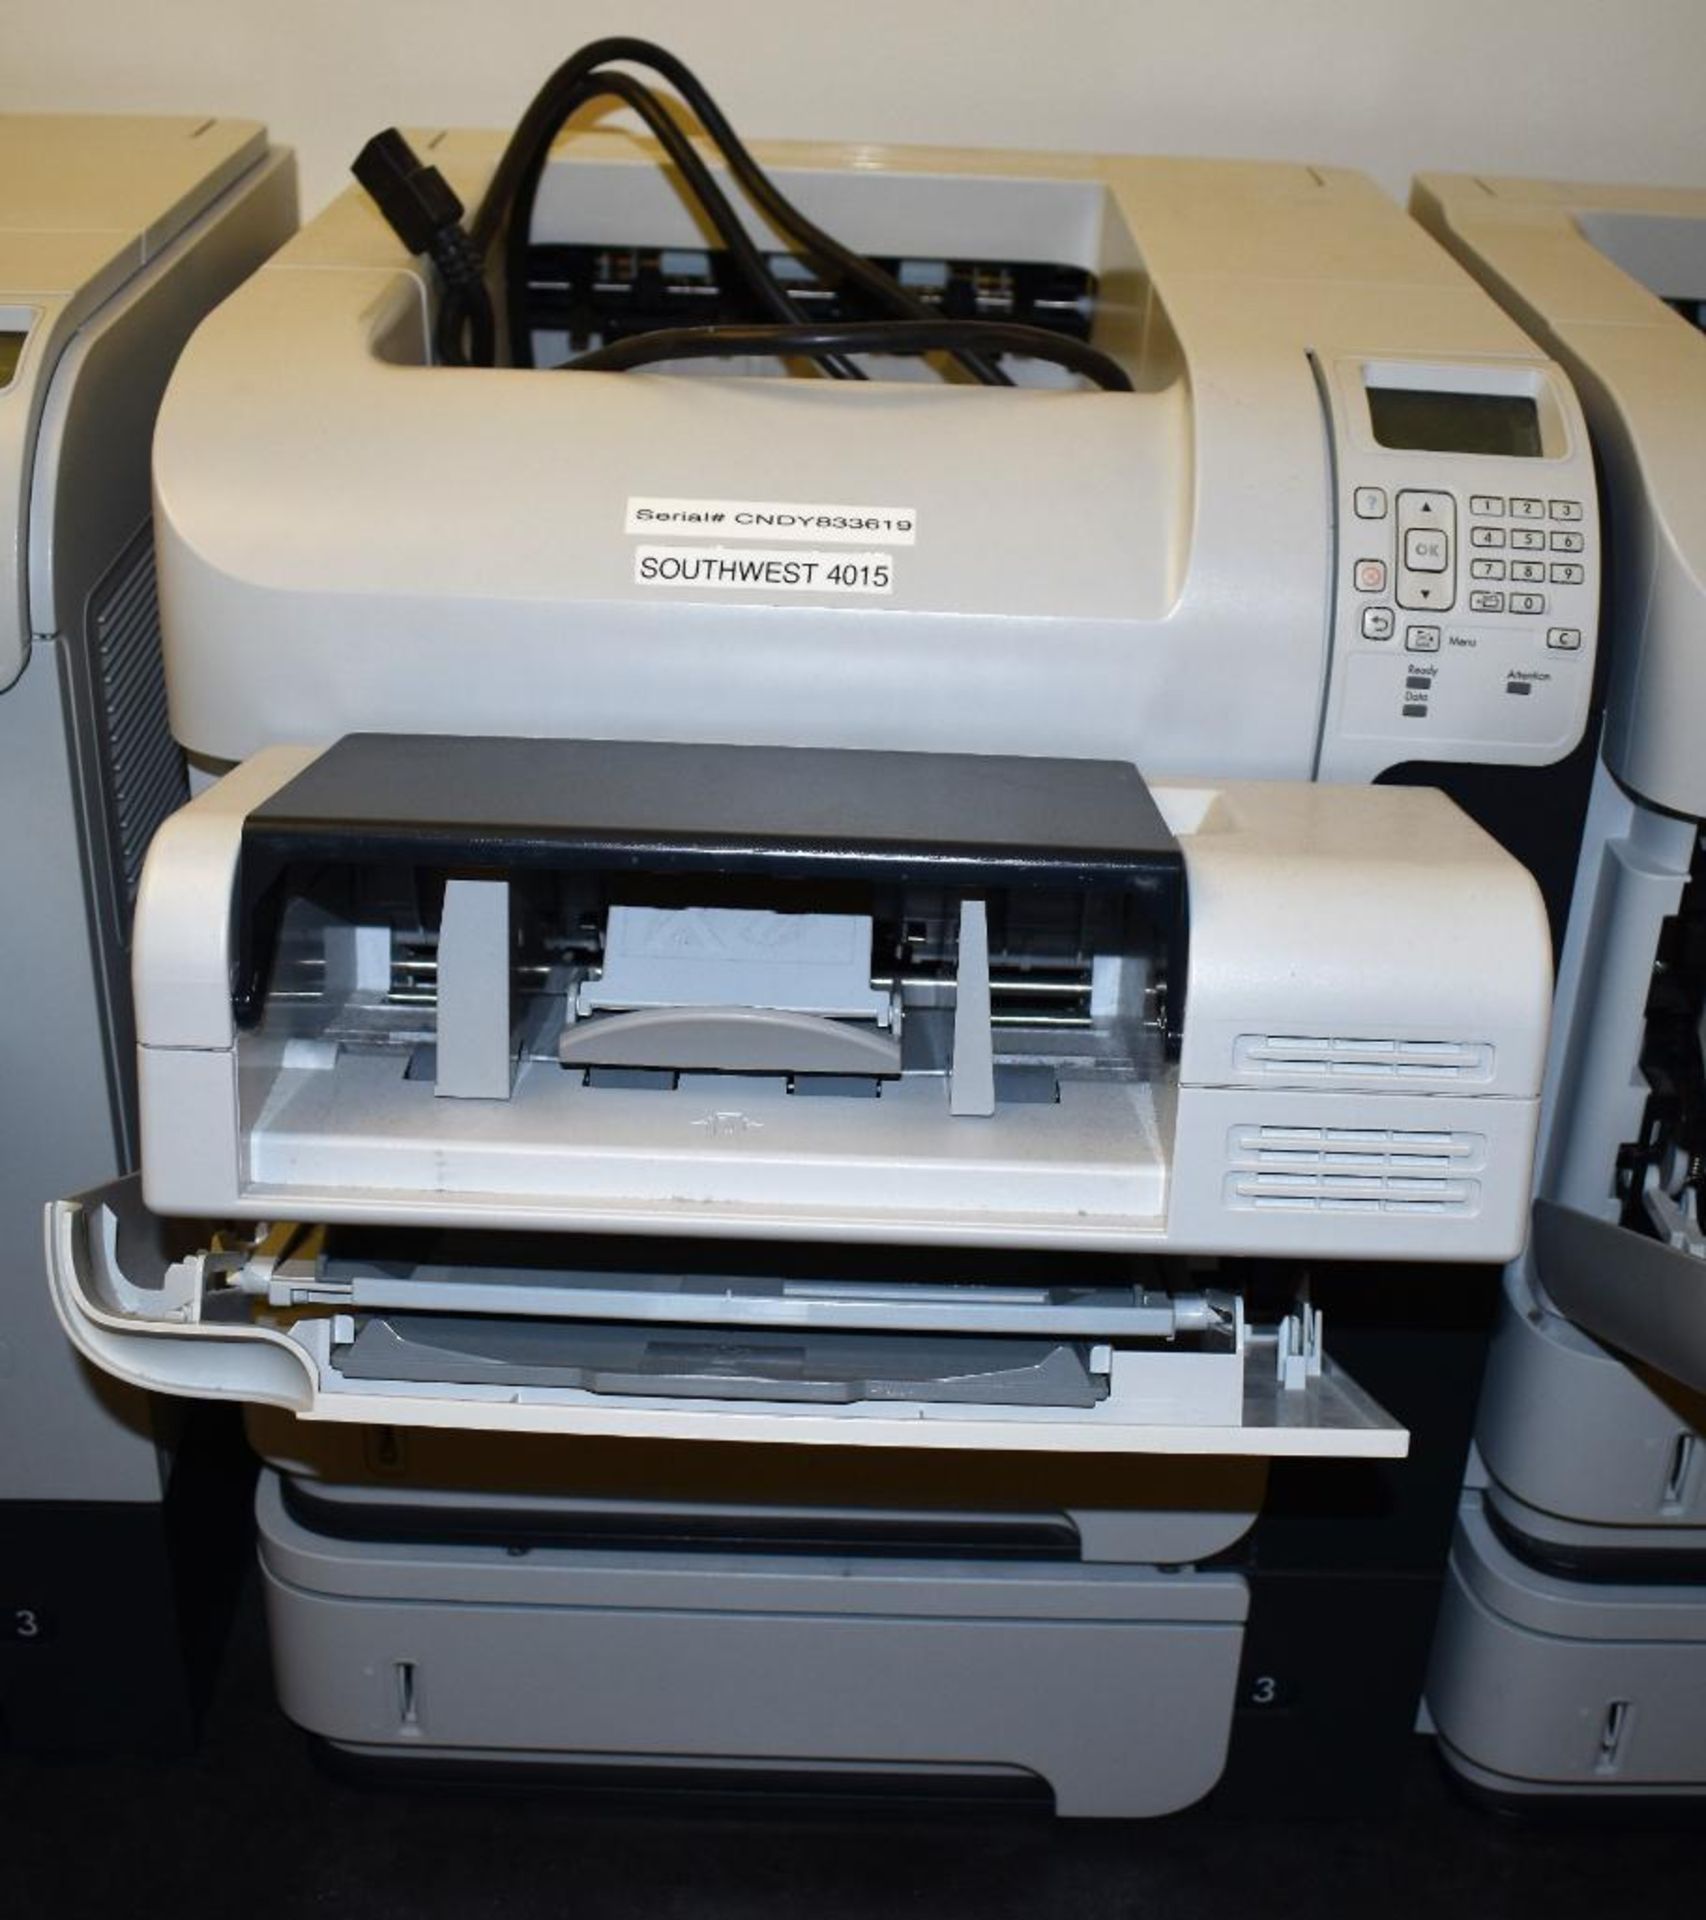 Assorted Printers c/o: HP LaserJet Model N/A, (2) Lexmark E260d Laser Jets, (5) Assorted HP (est) La - Image 7 of 9